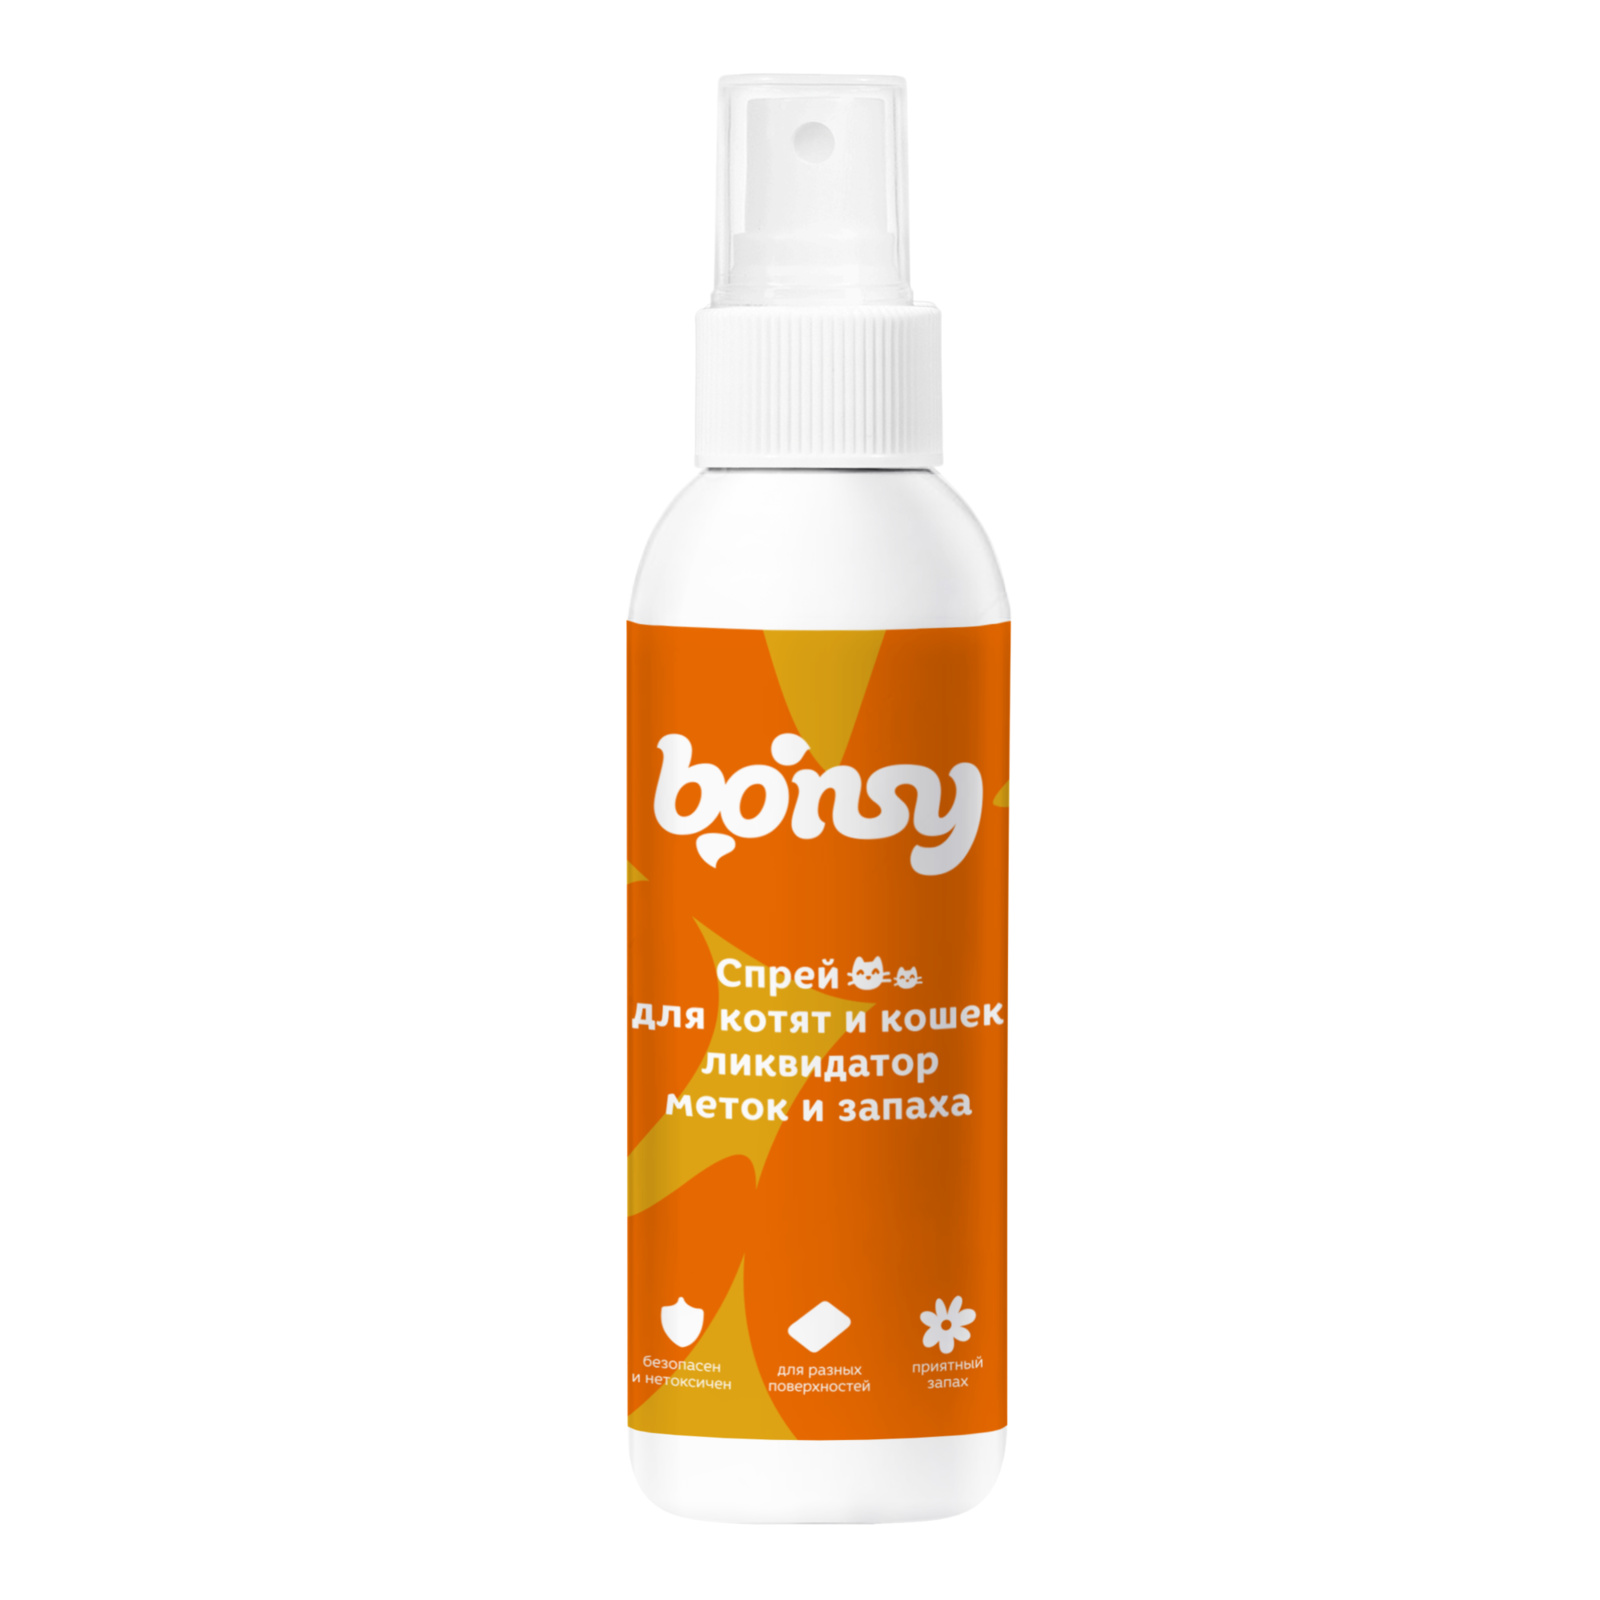 Bonsy Bonsy спрей «Ликвидатор меток и запаха» для кошек и котят (150 г) bonsy bonsy гель для рук с антибактериальным эффектом 150 г